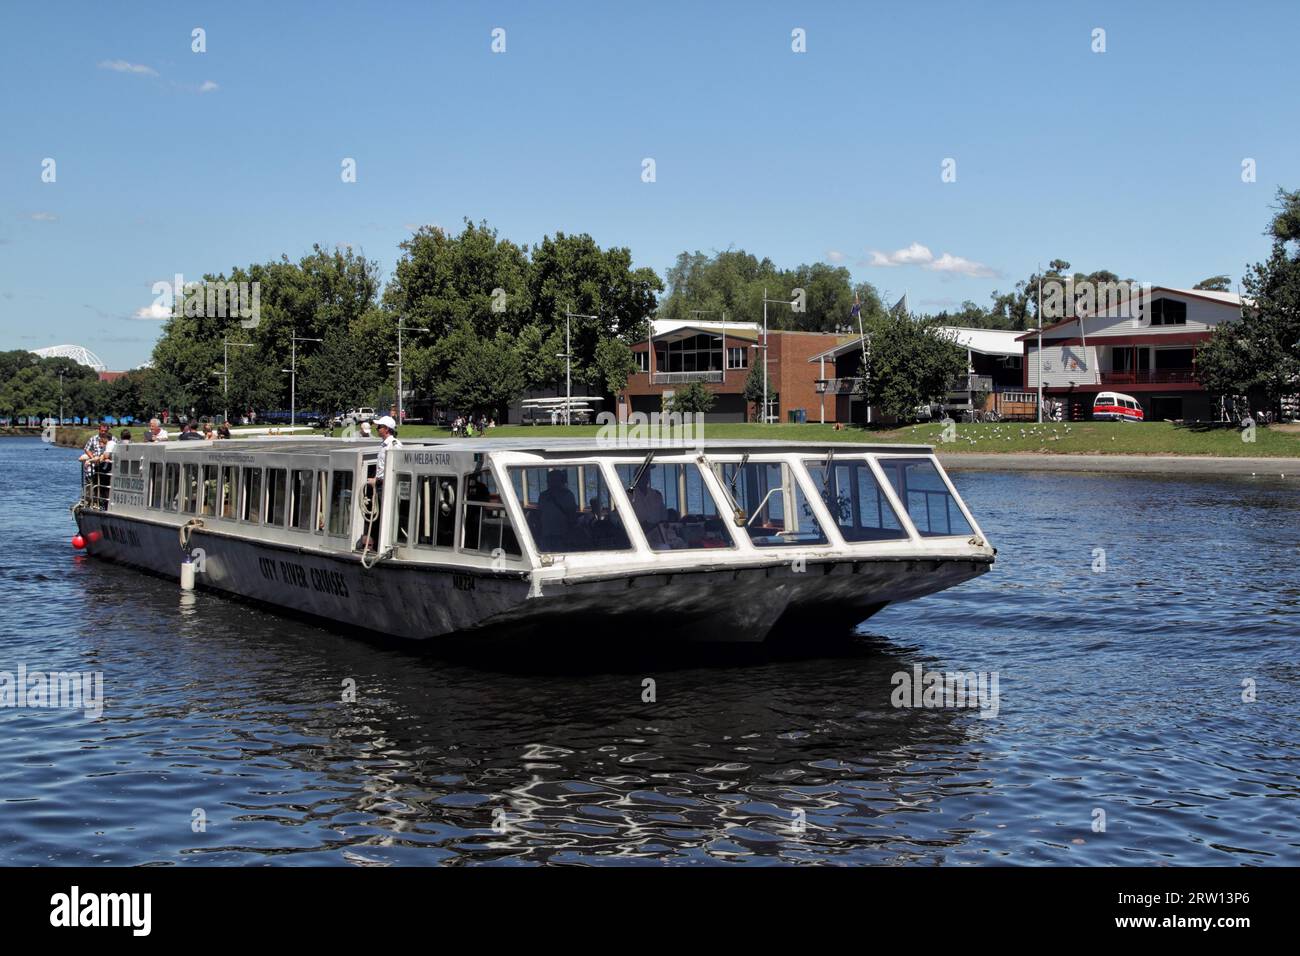 Excursion boat on the Yarra River in Melbourne, Victoria, Australia Stock Photo